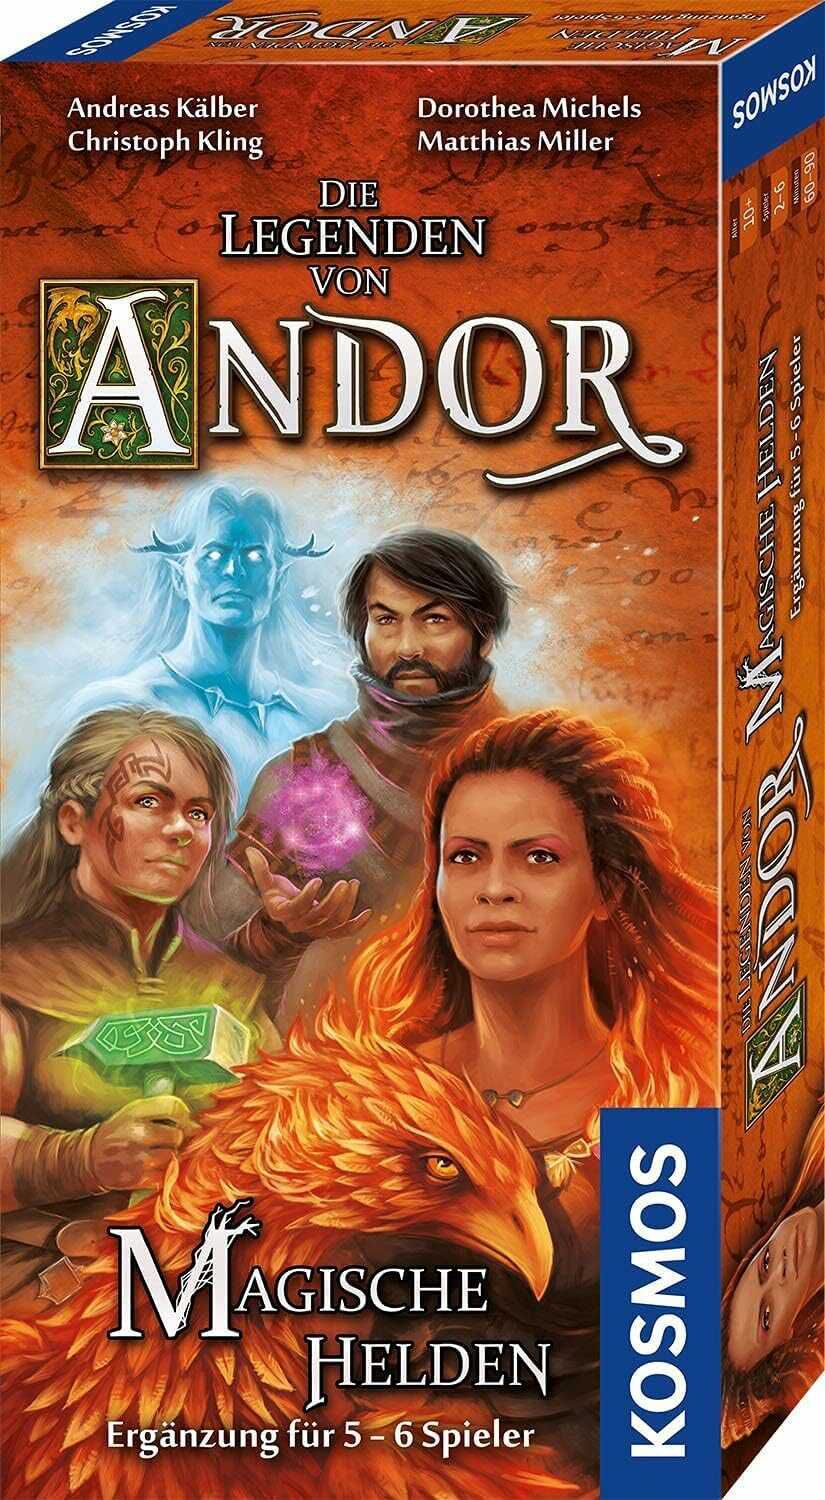 KOSMOS 682149 Die Legenden von Andor   Magische Helden für 9,82€ PVG 15,98€